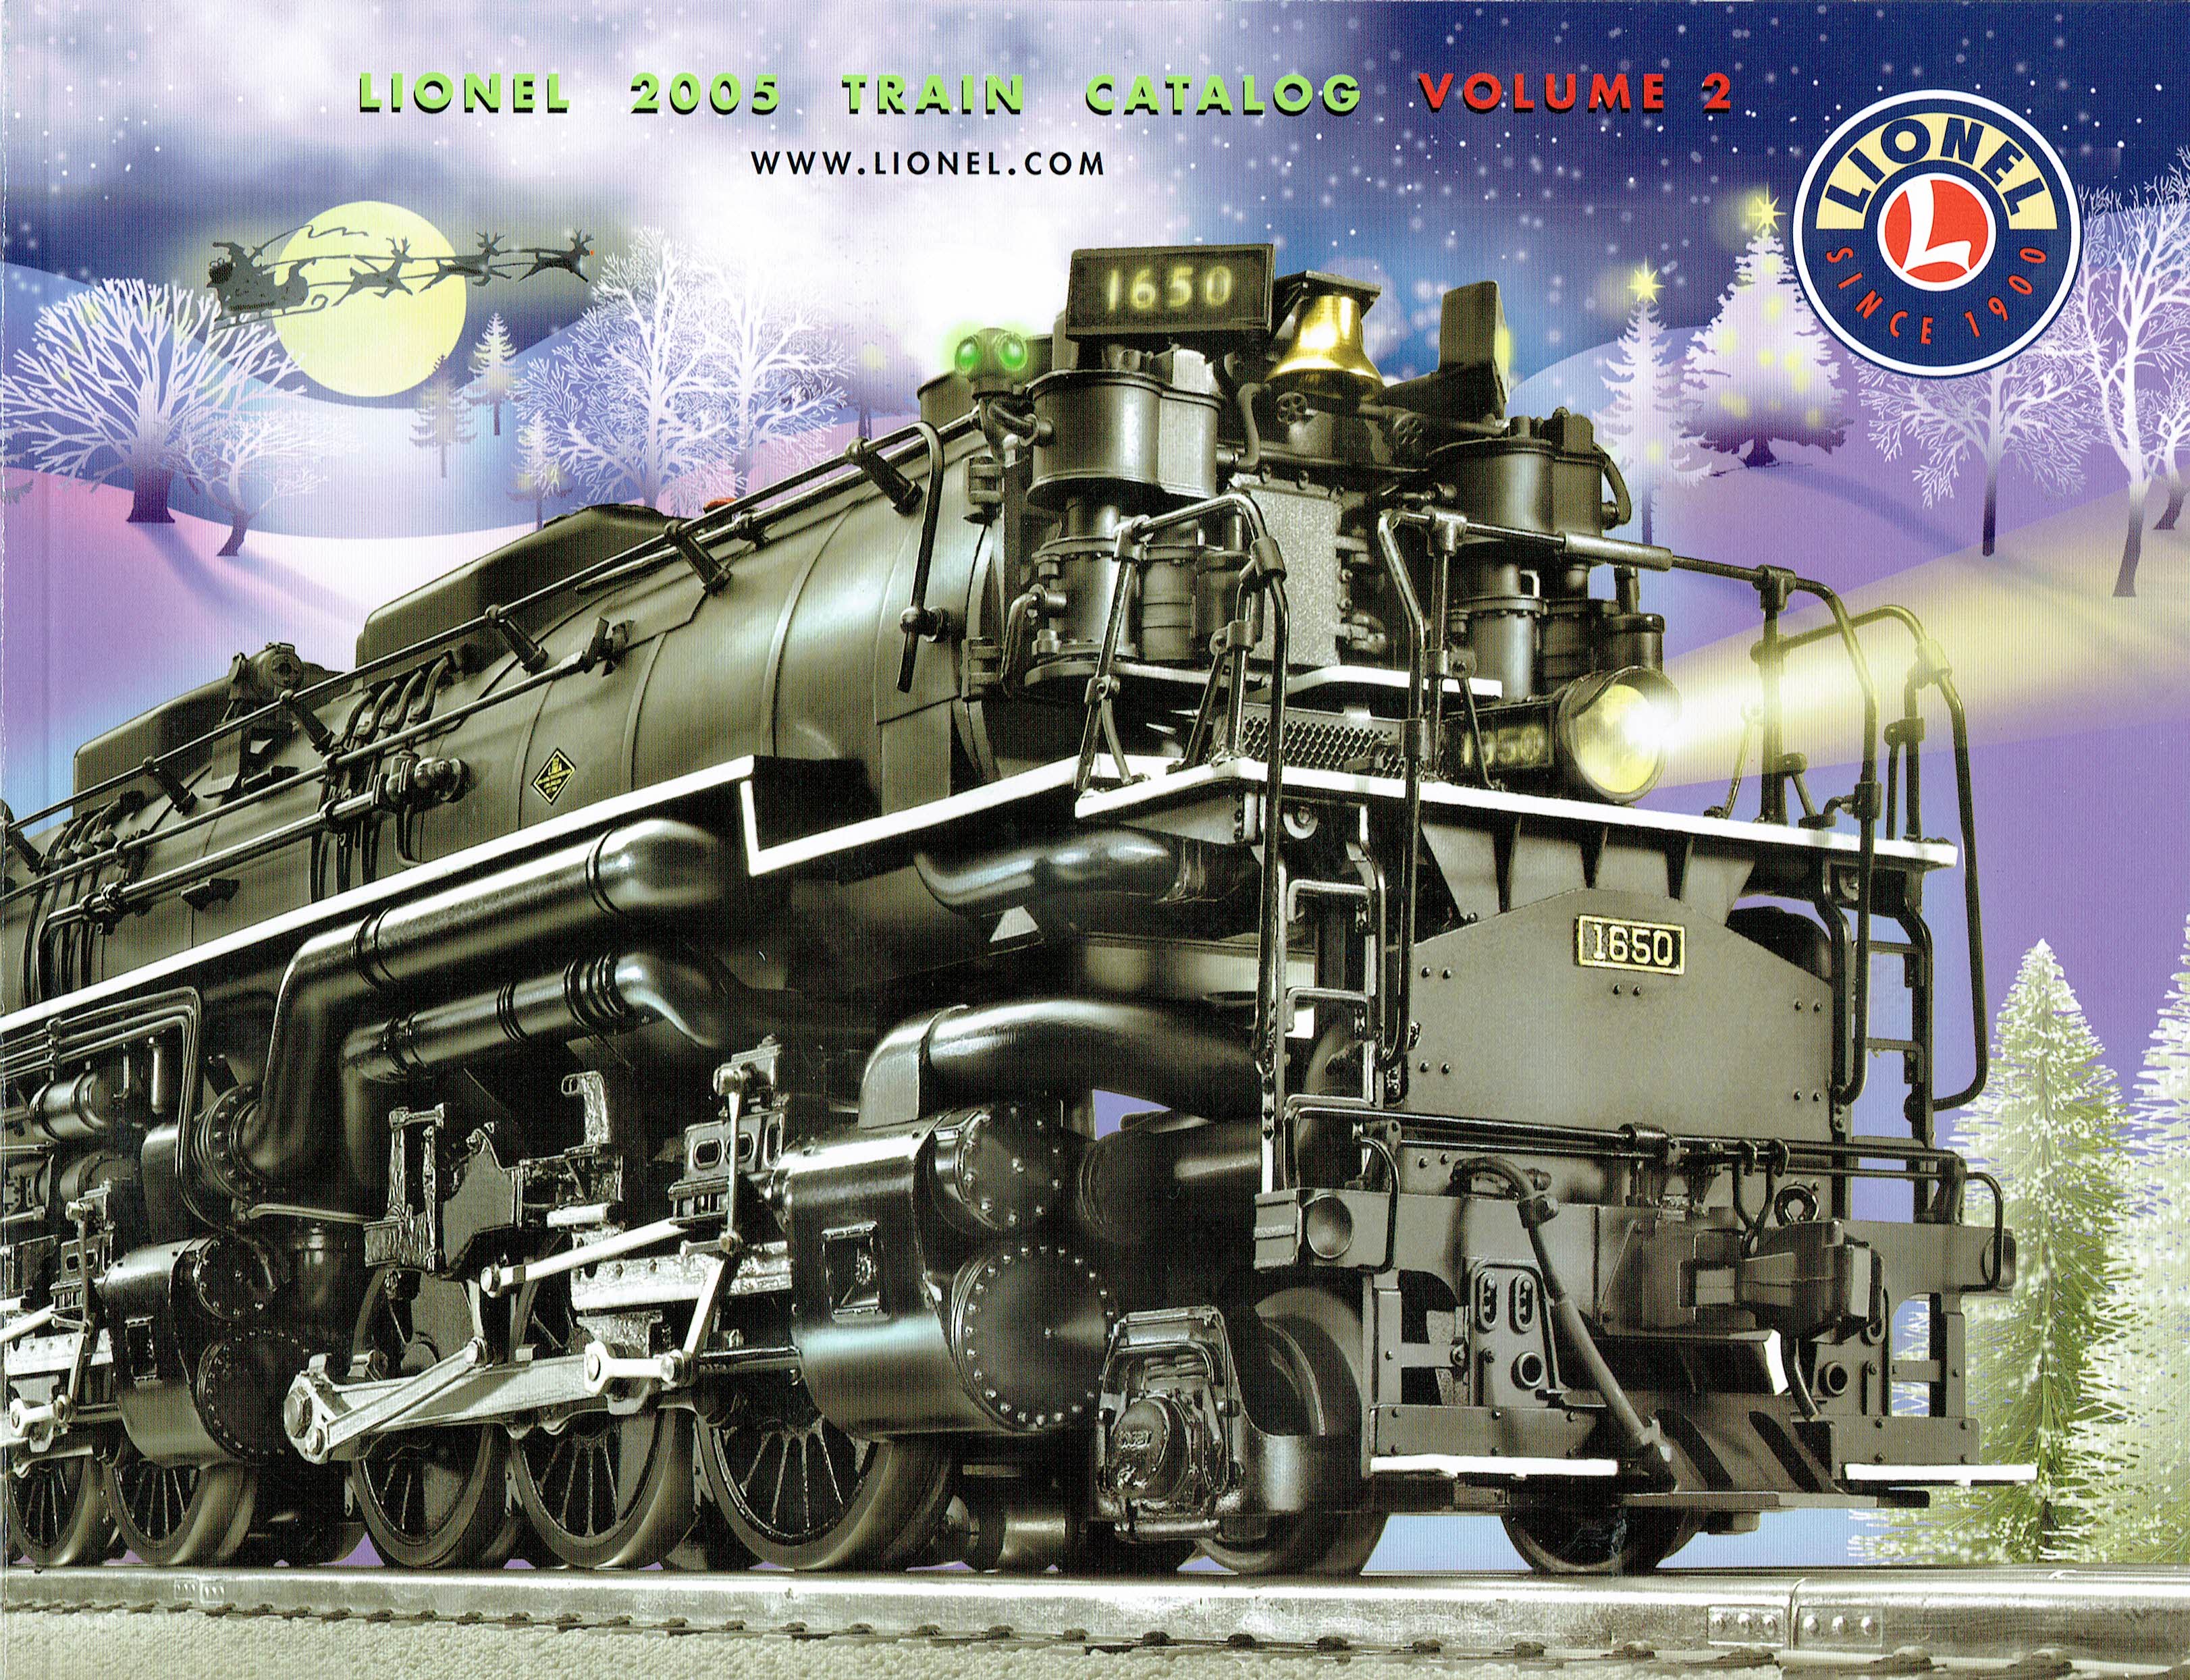 Lionel 2005 Train Catalog Volume 2 image